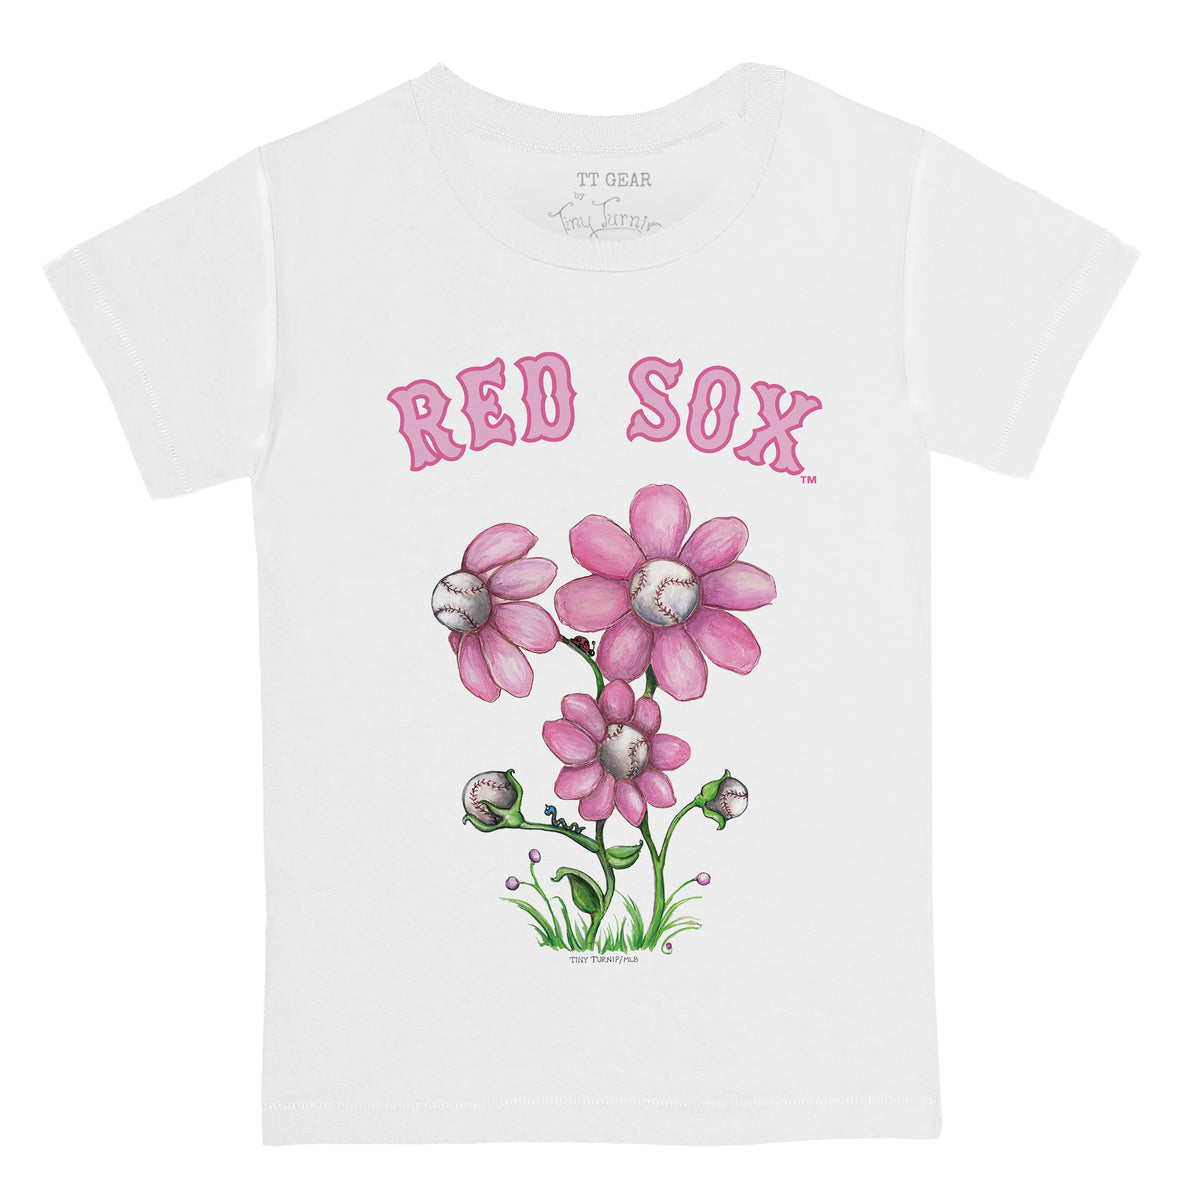 Boston Red Sox Blooming Baseballs Tee Shirt